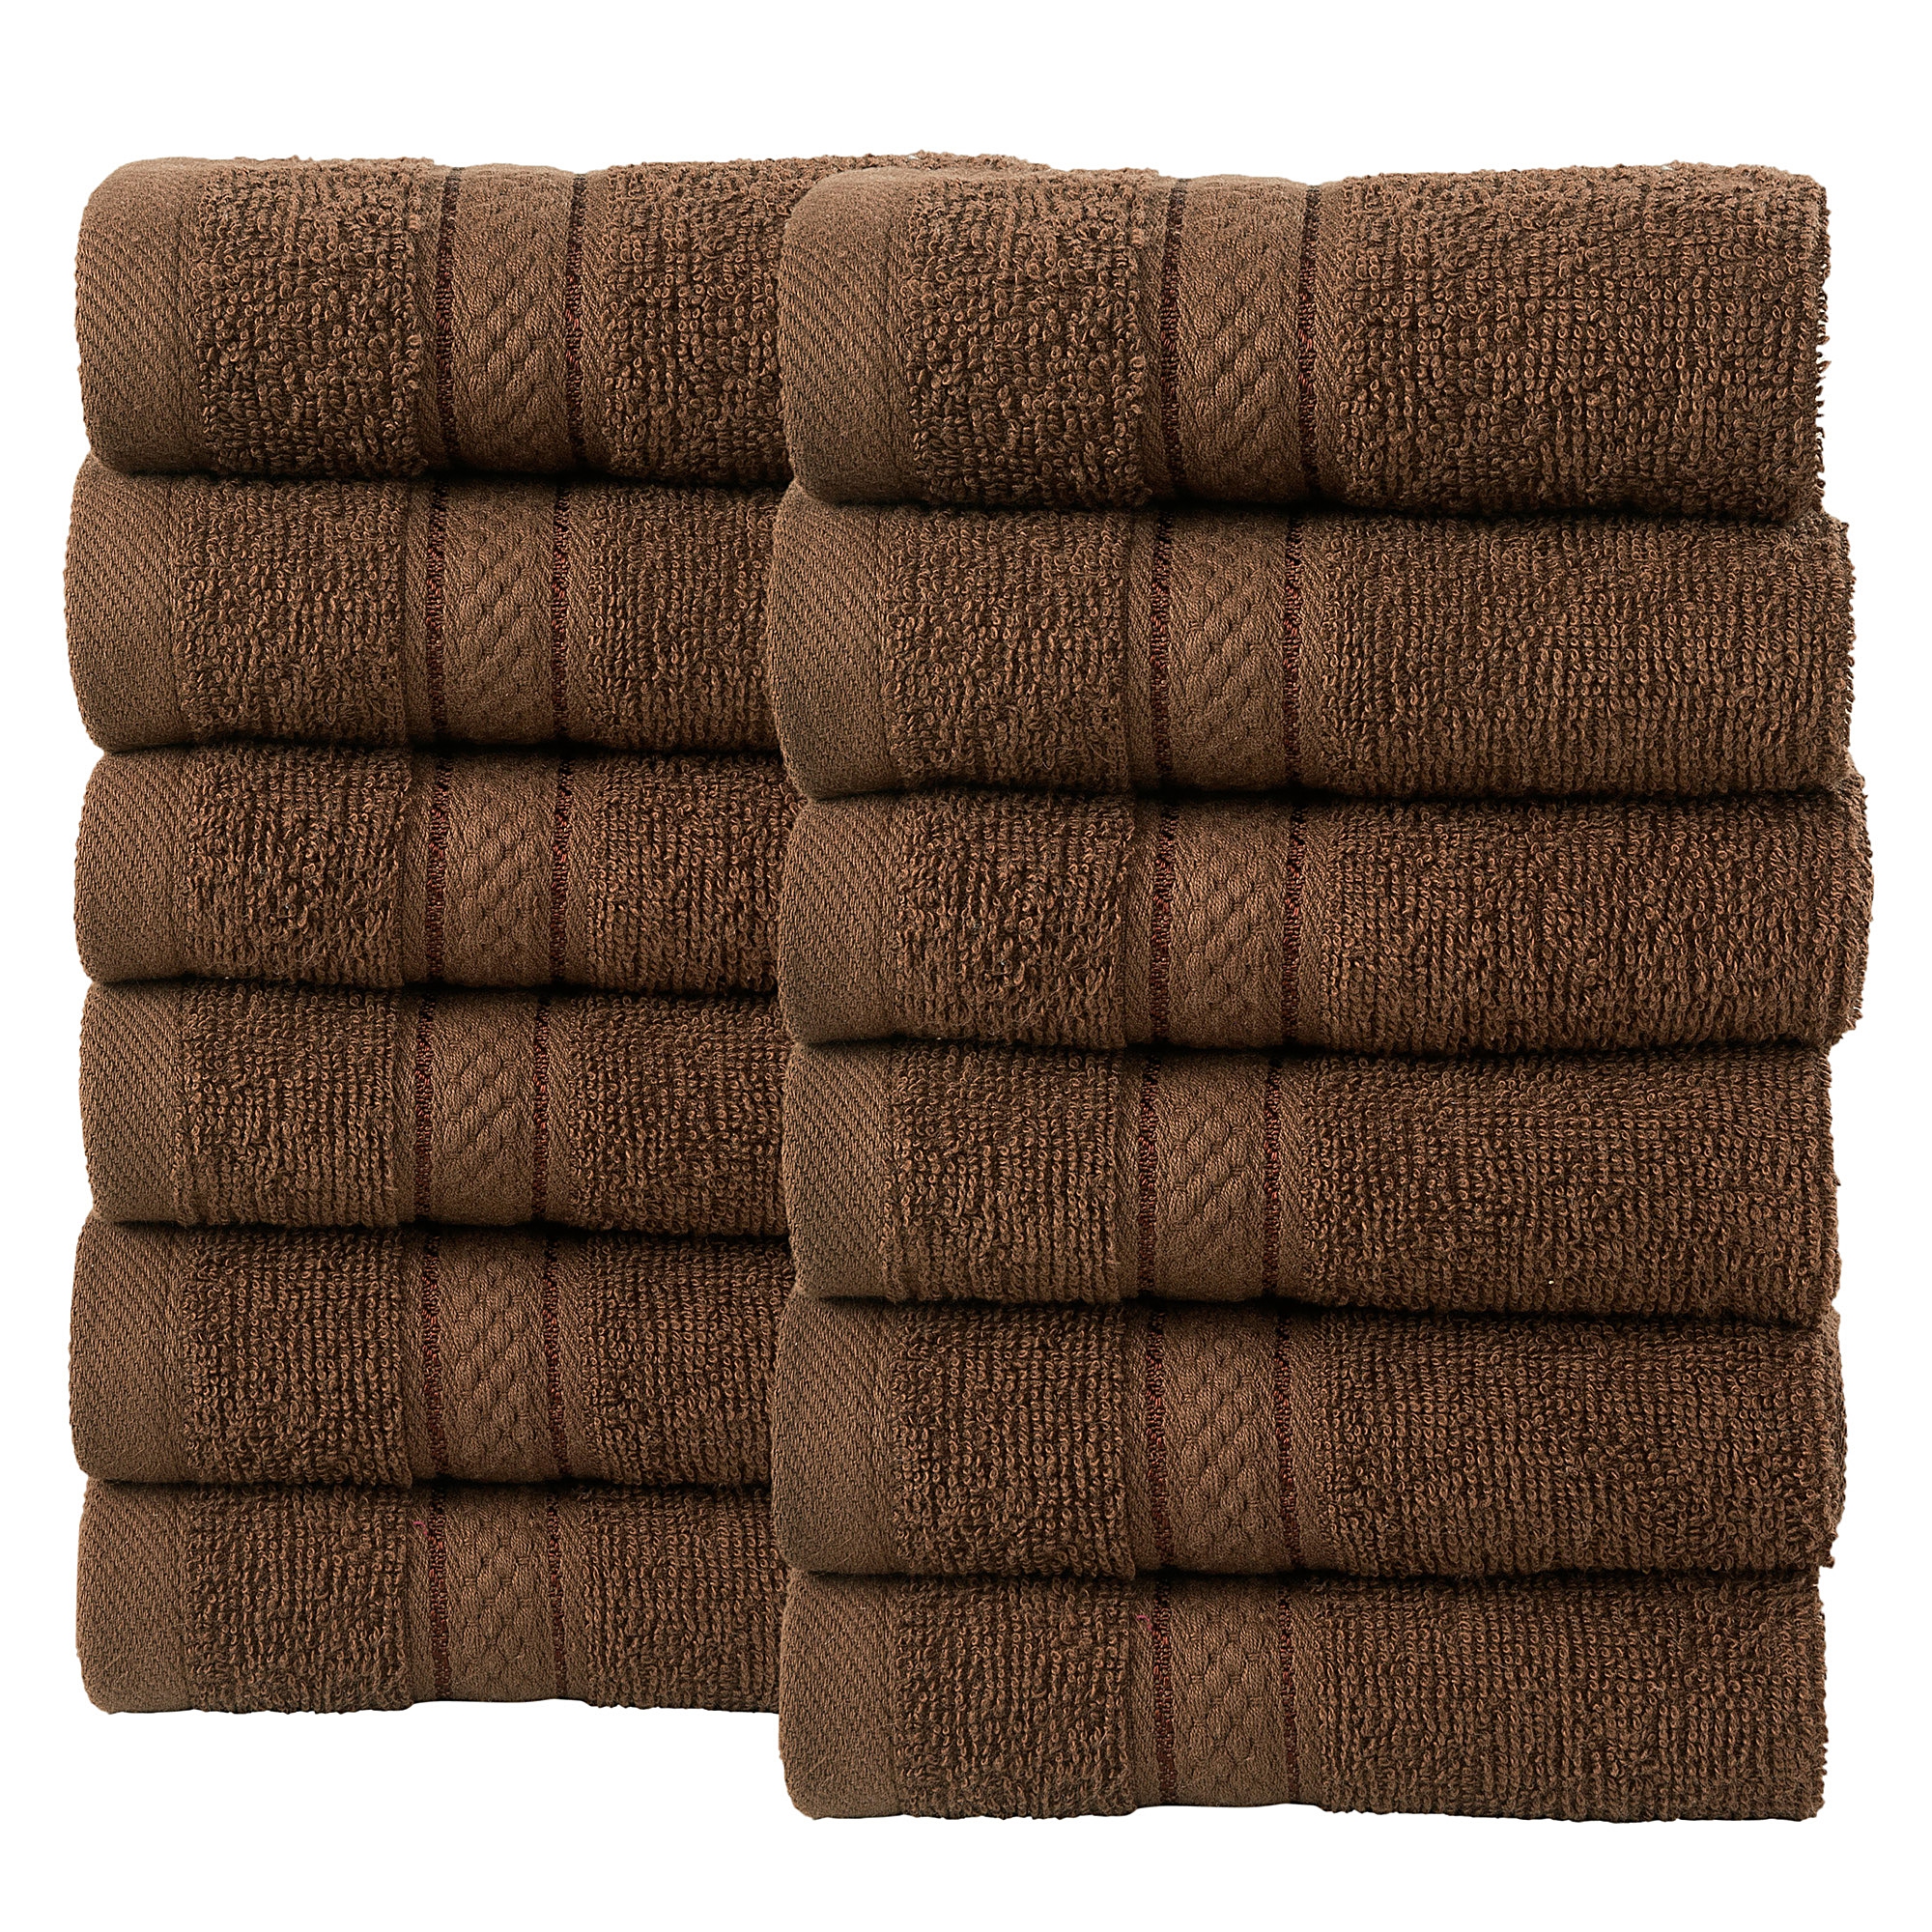 12 Pcs Face Cotton Towel Bale Set Chocolate Plain